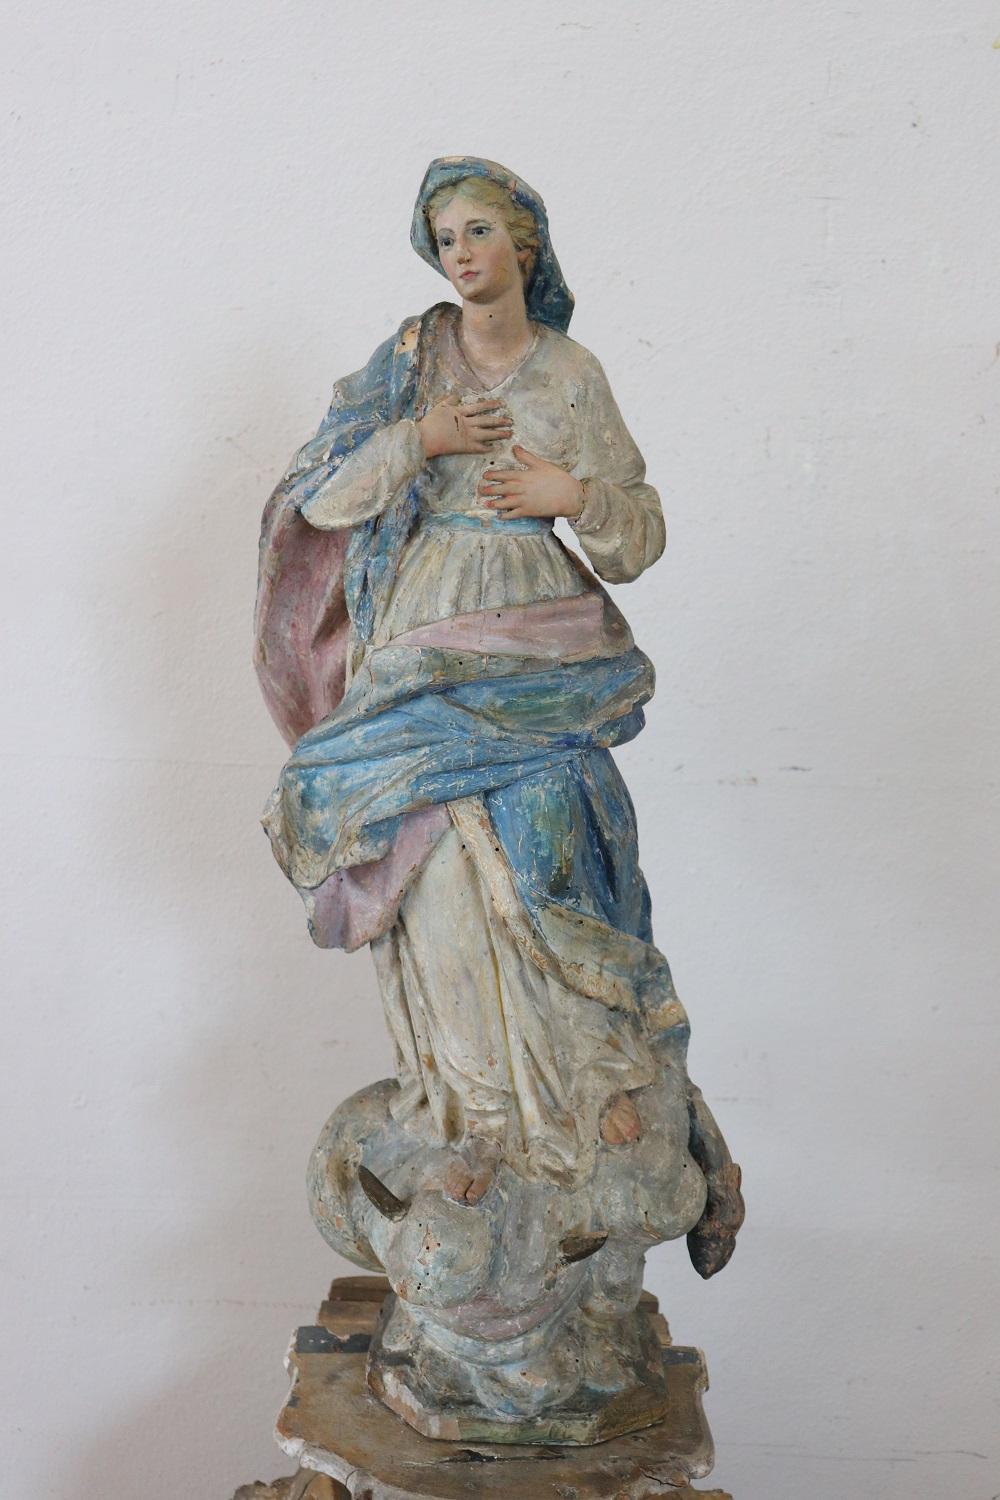 Seltene antike Skulptur der Jungfrau Maria. Perfekt für eine Sammlung sakraler antiker Gegenstände. Hohe künstlerische Qualität der italienischen Bildhauerei. Komplett aus handgeschnitztem und bemaltem Holz gefertigt.


